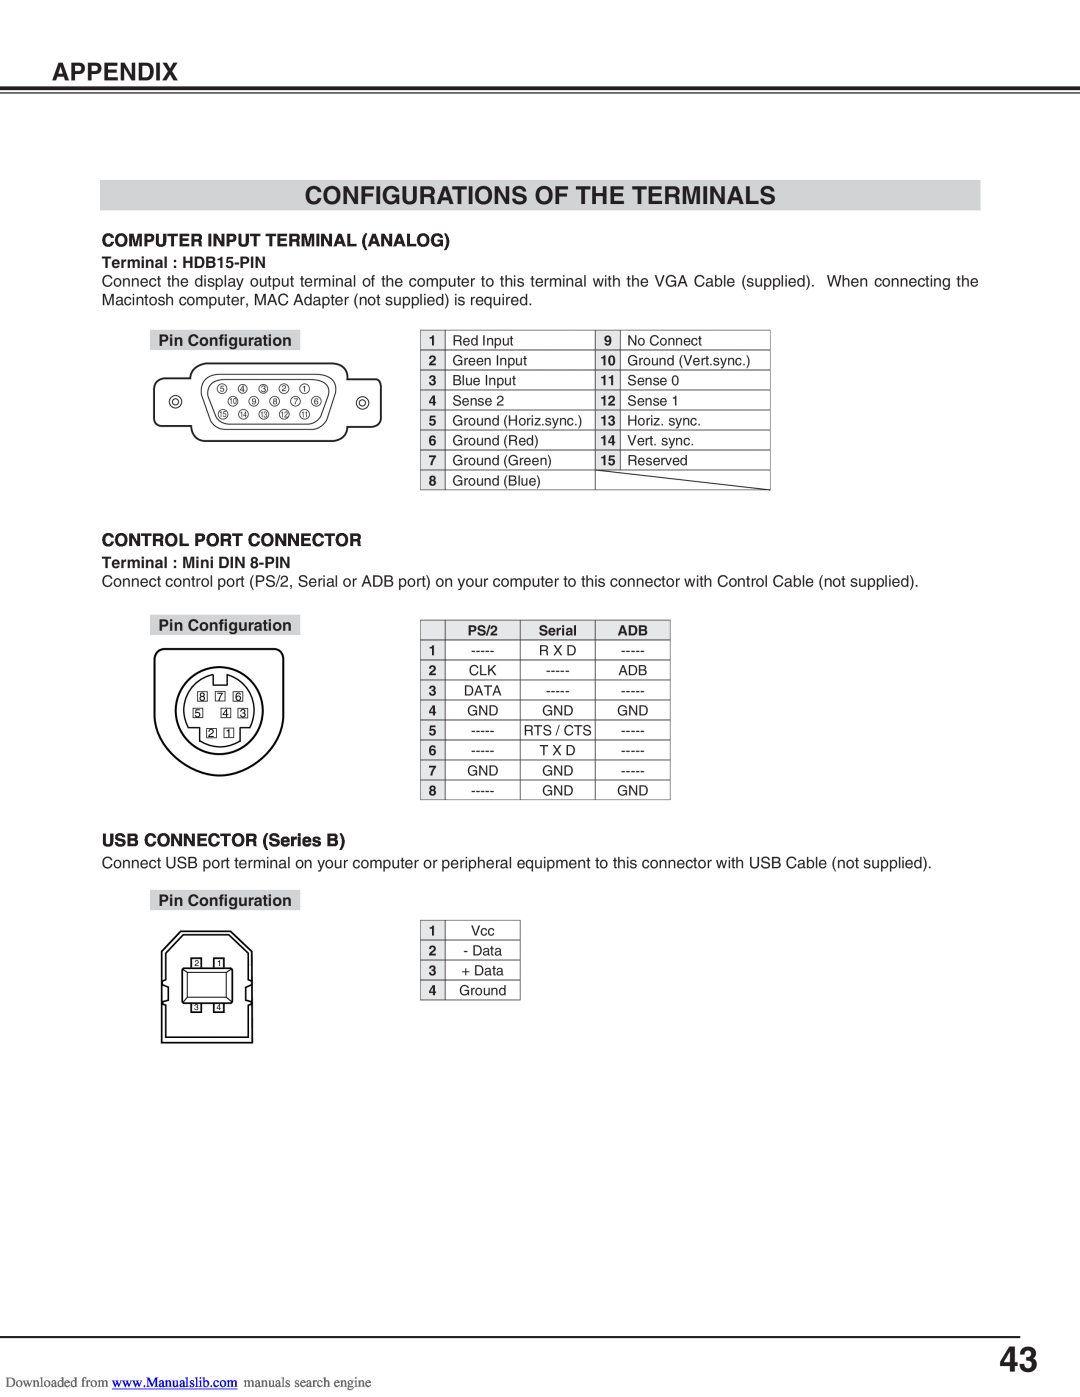 Canon LV-S2 Appendix Configurations Of The Terminals, Terminal HDB15-PIN, Pin Configuration, Terminal Mini DIN 8-PIN 